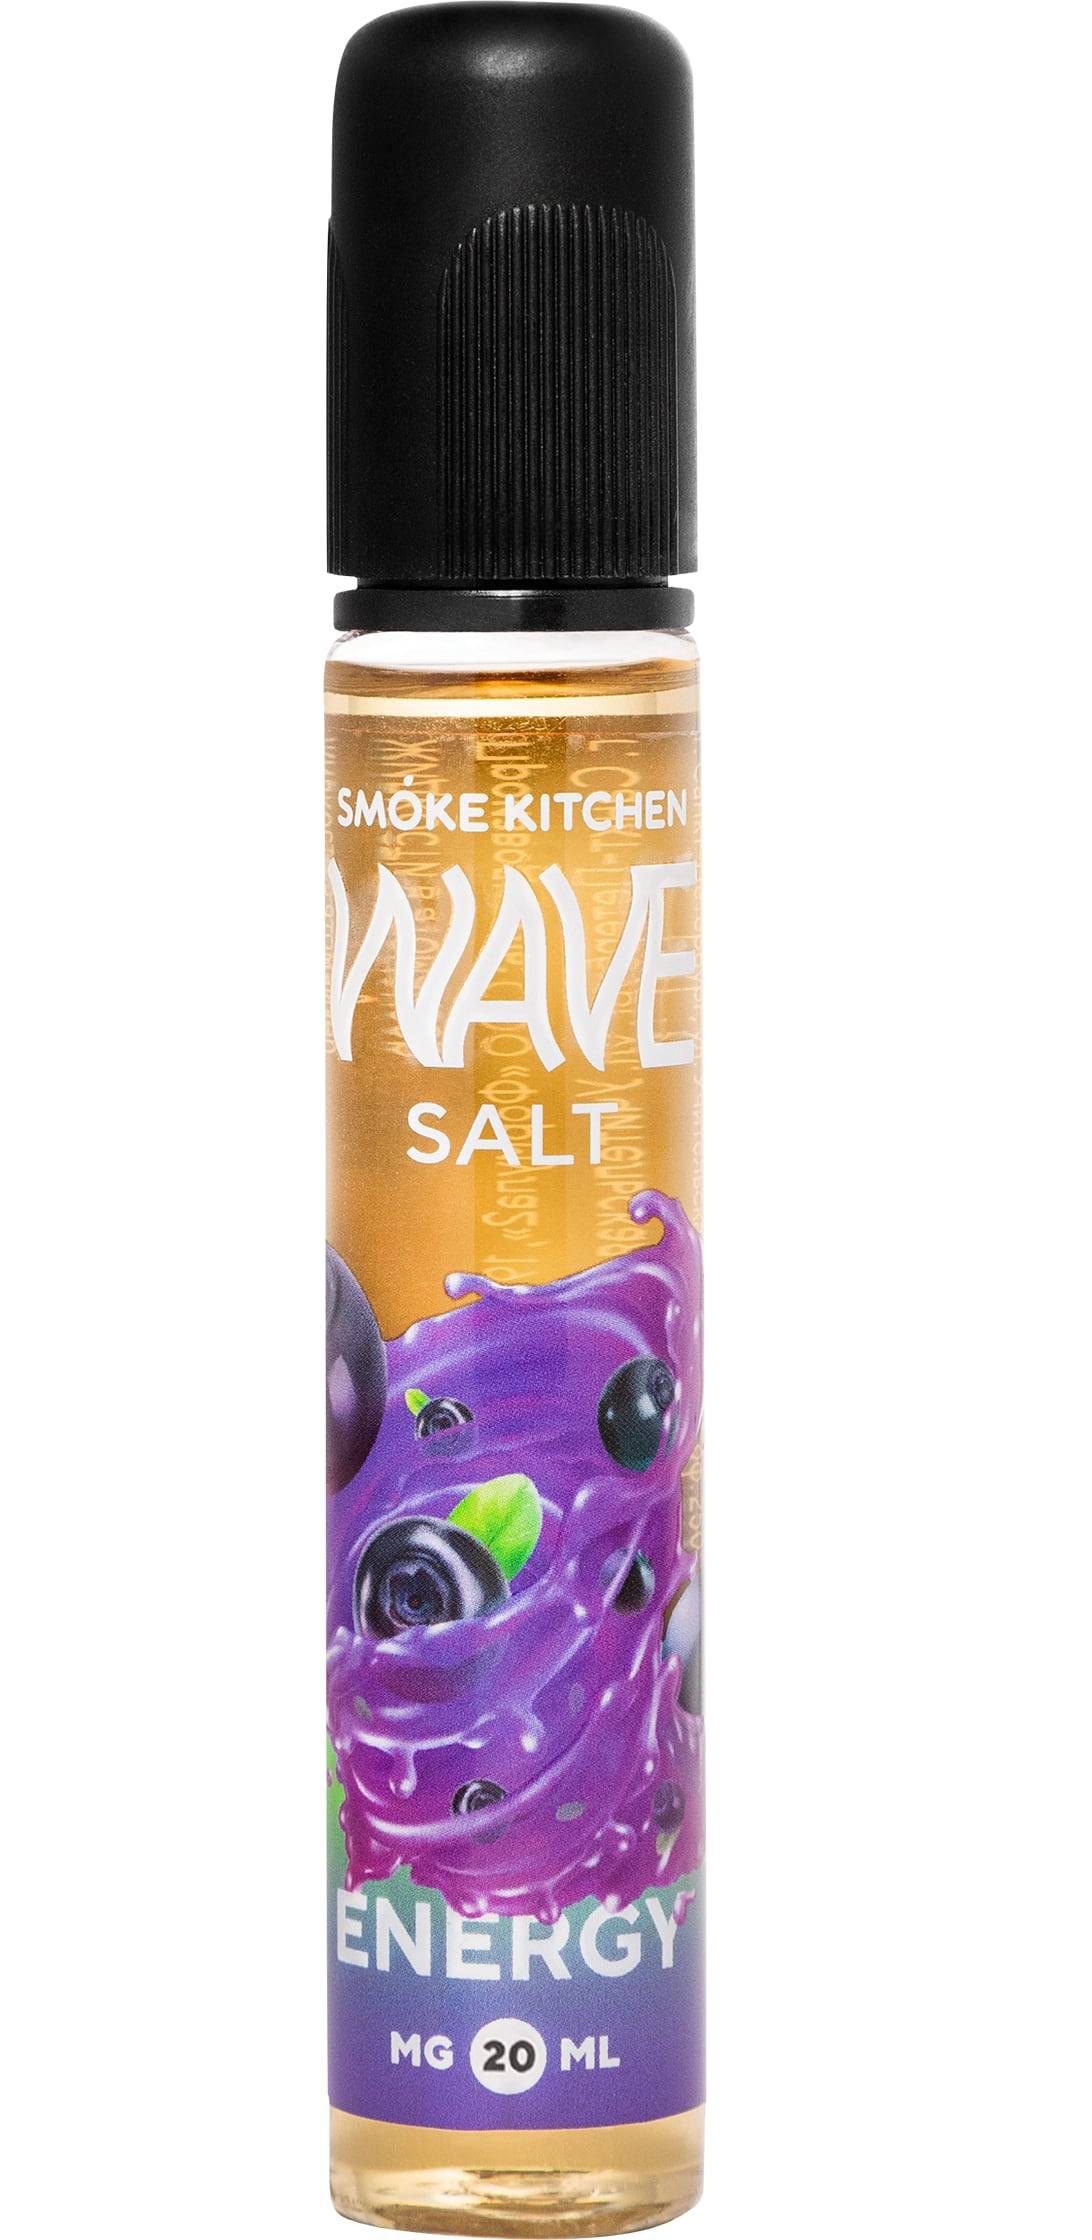  Жидкость SMOKE KITCHEN Wave Salt 30ml Energy 2% от МосТАБАК ОПТ